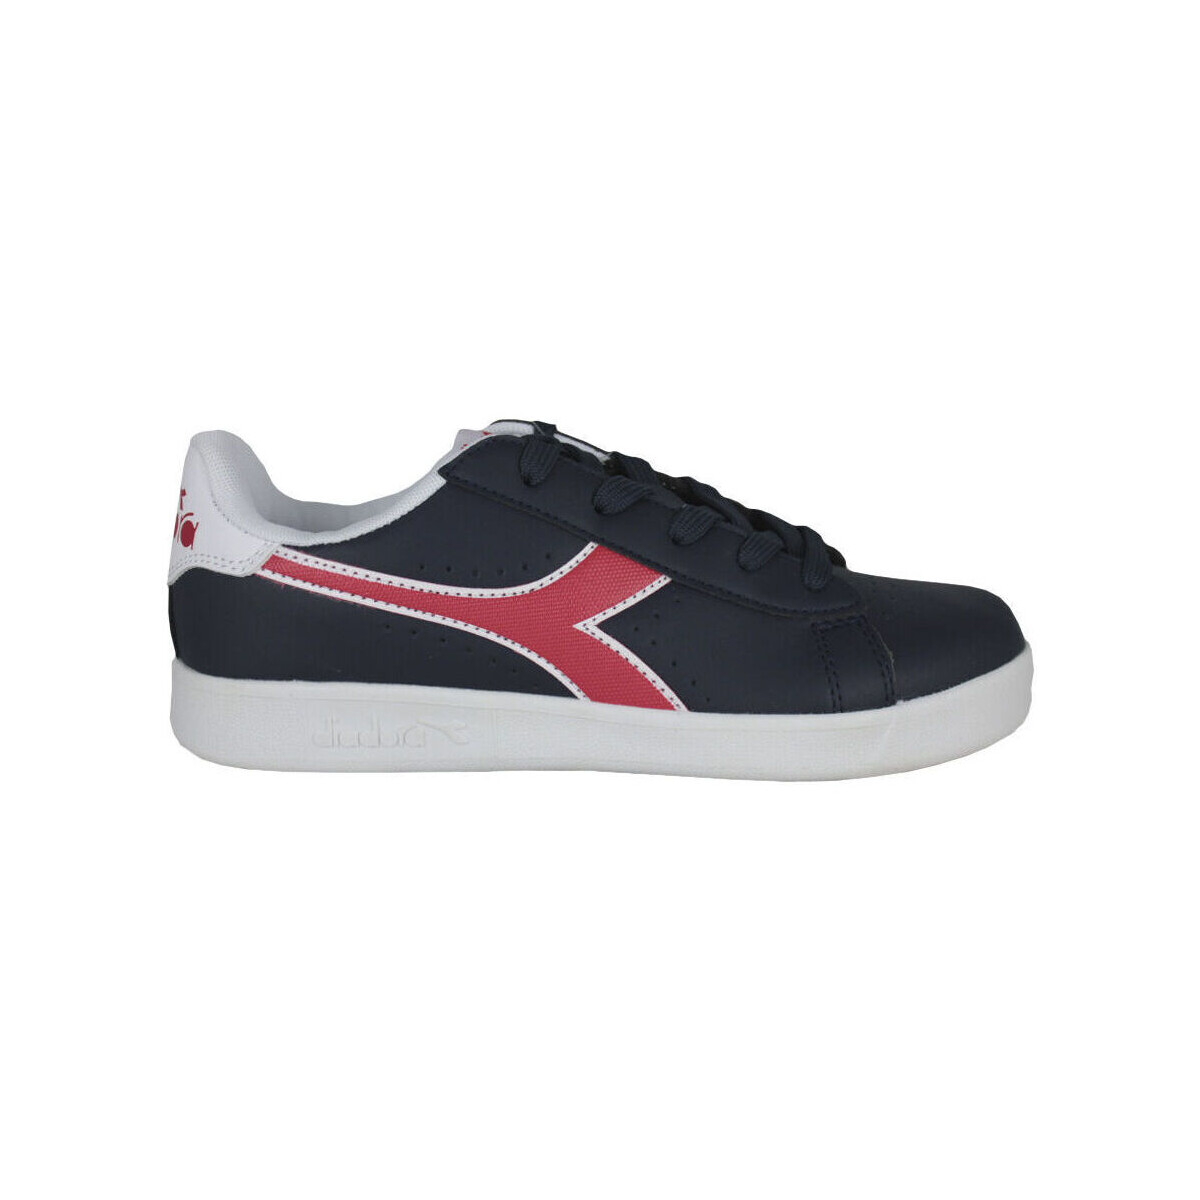 Παπούτσια Παιδί Sneakers Diadora 101.173323 01 C8594 Black iris/Poppy red/White Black